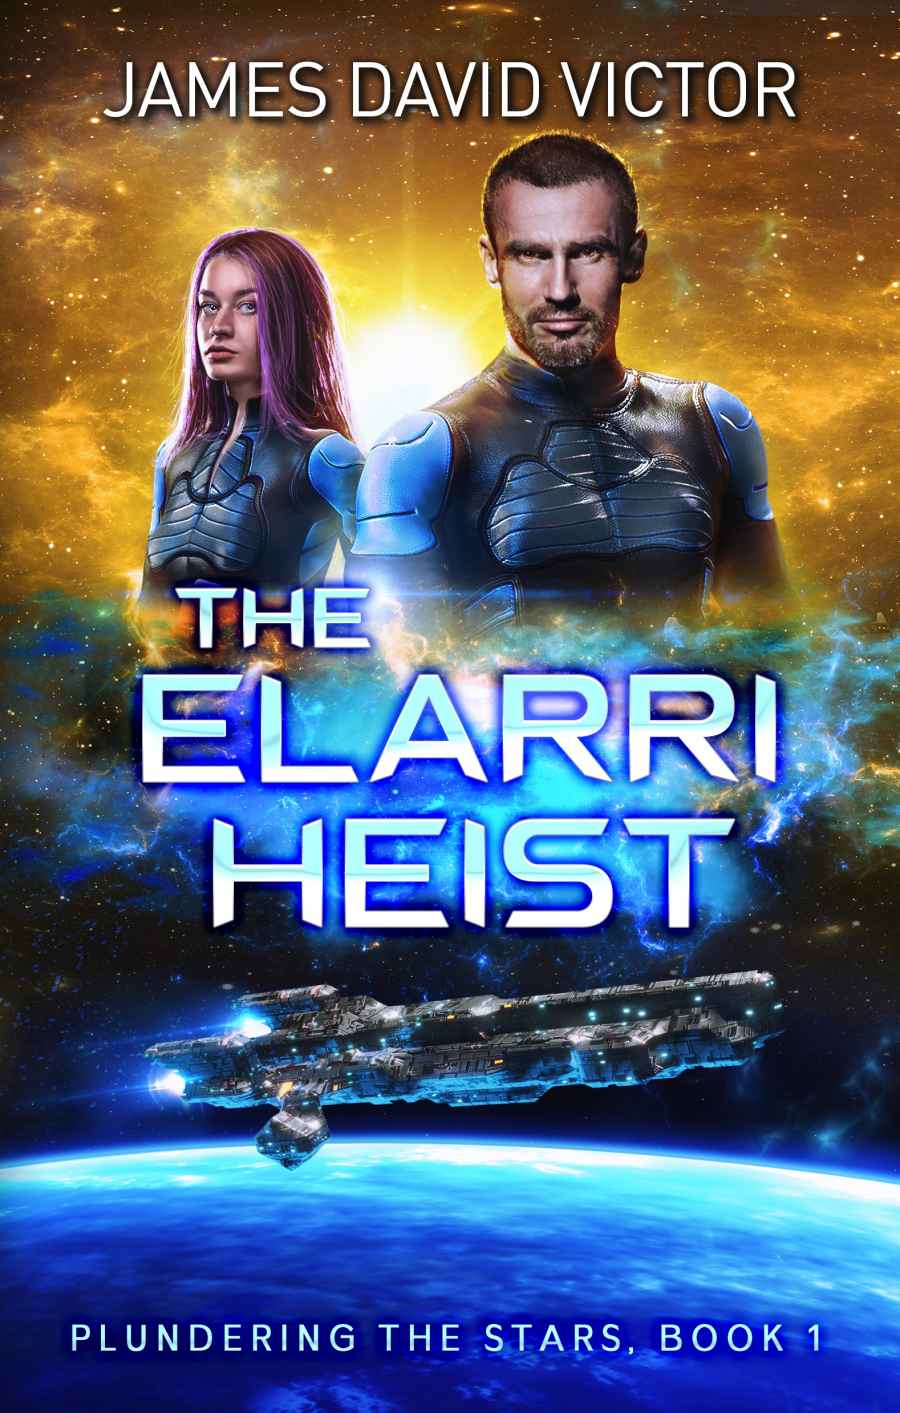 The Elarri Heist